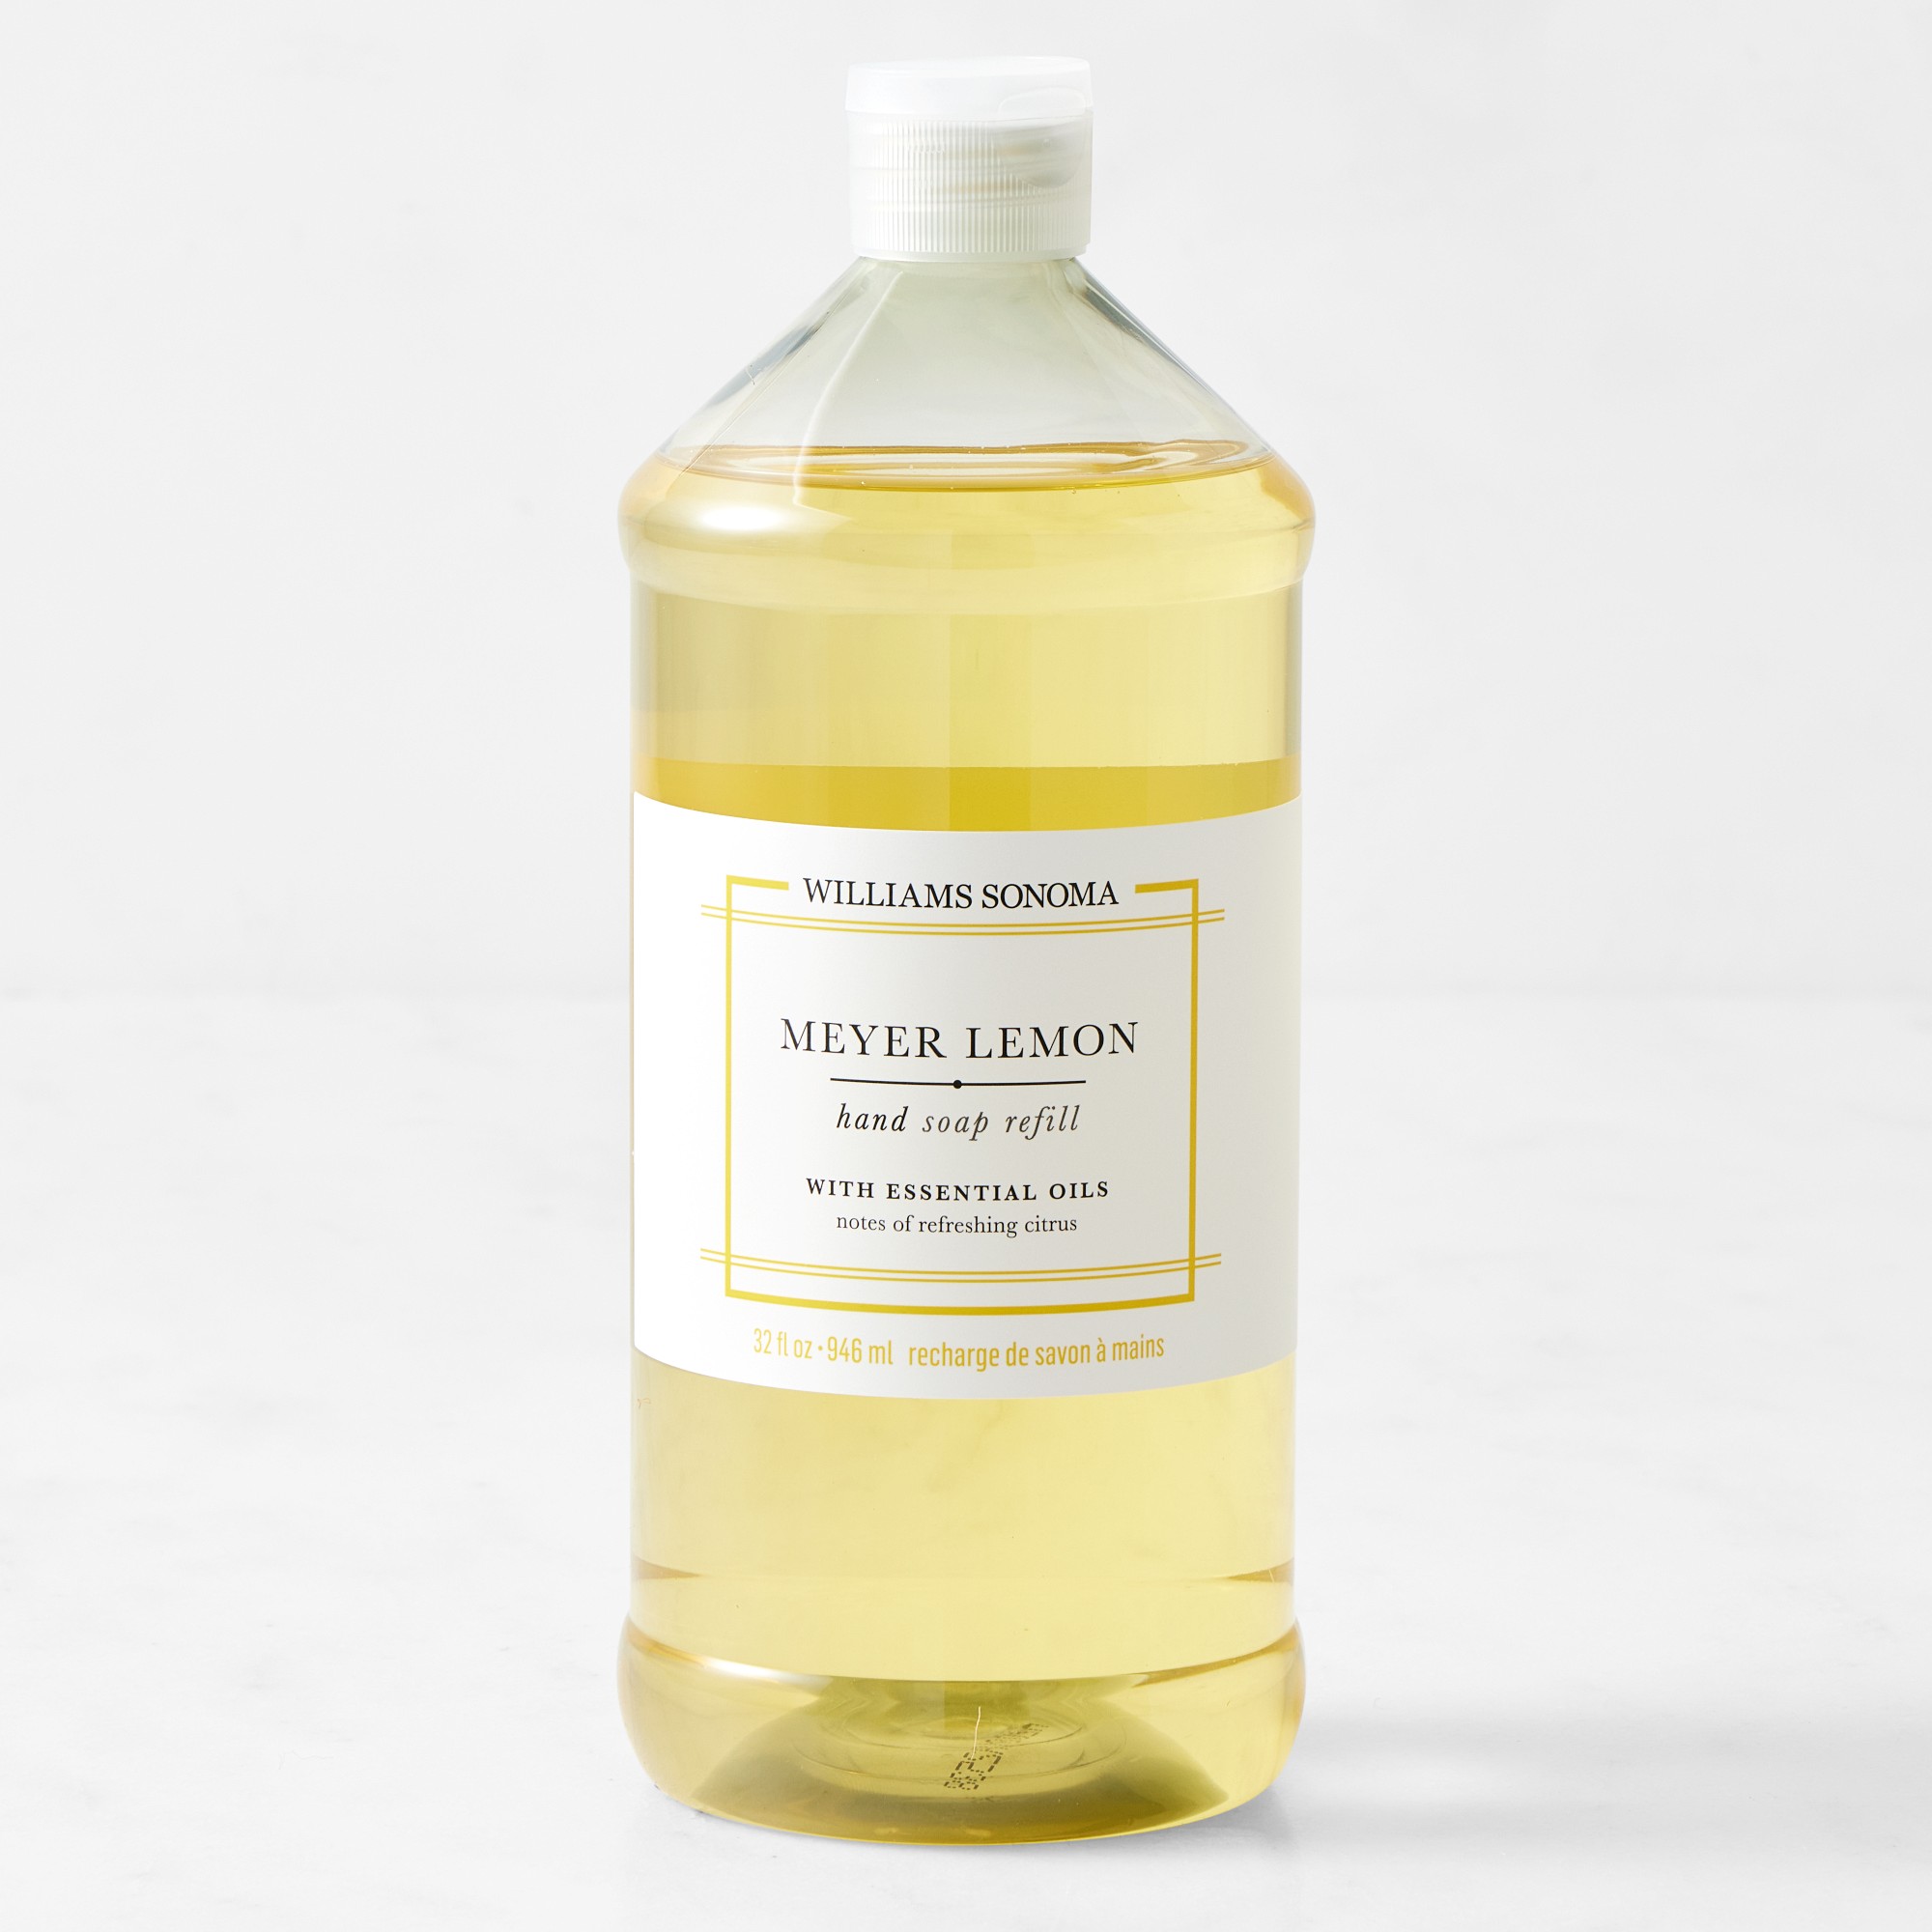 Williams Sonoma Meyer Lemon Hand Soap Refill, 32oz.